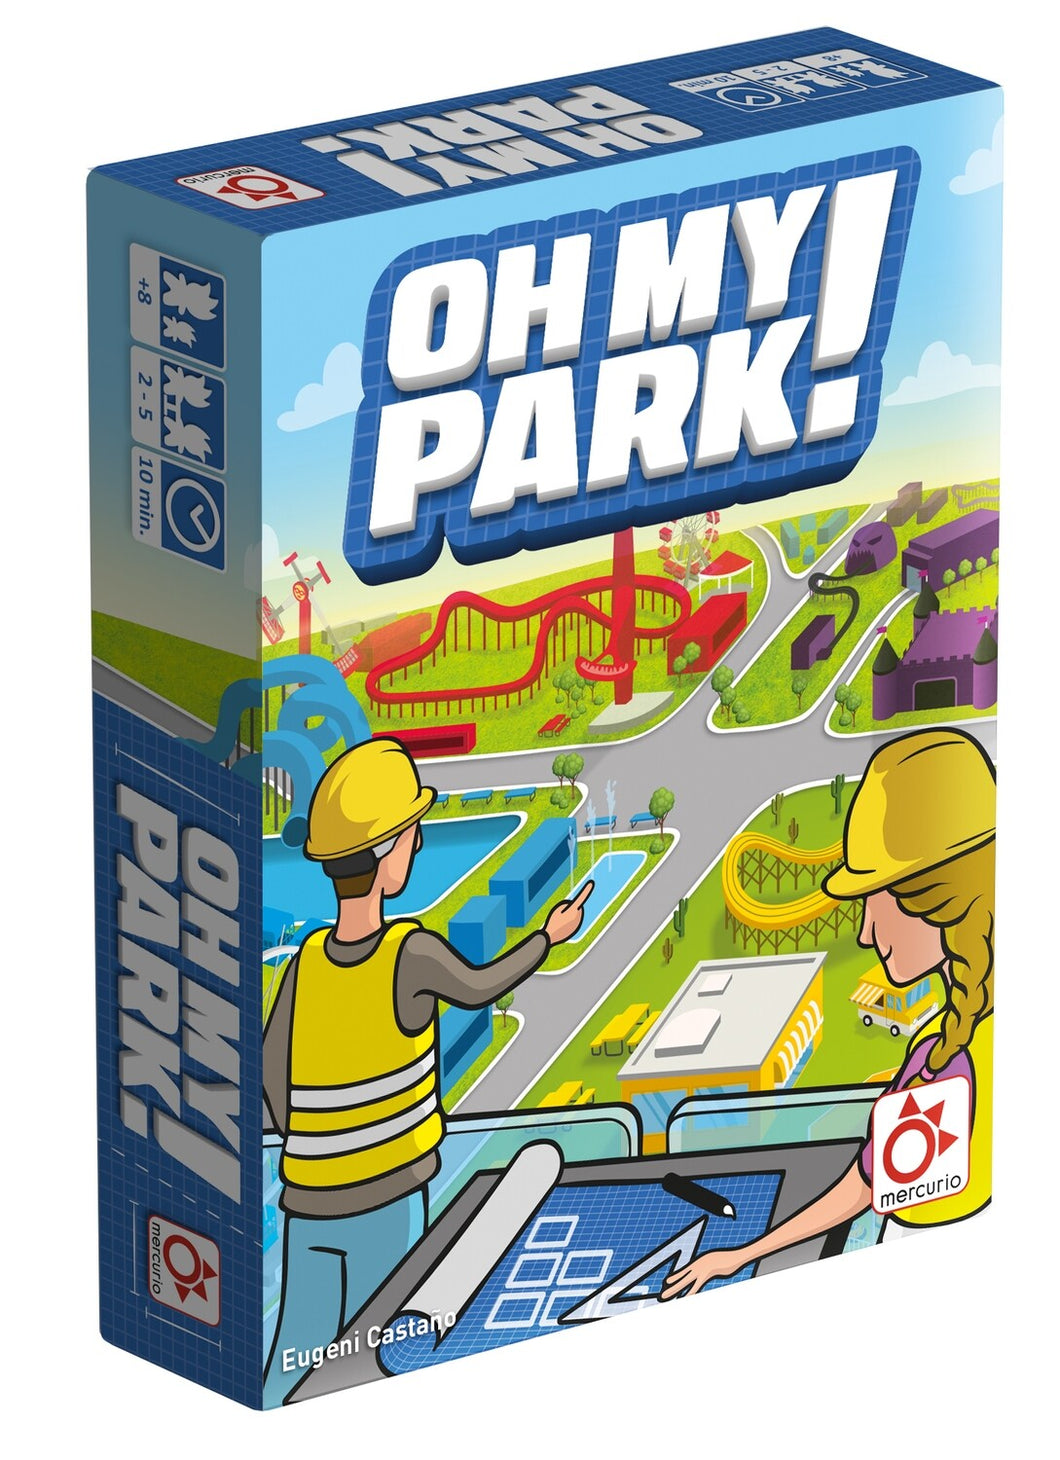 Oh, my park!